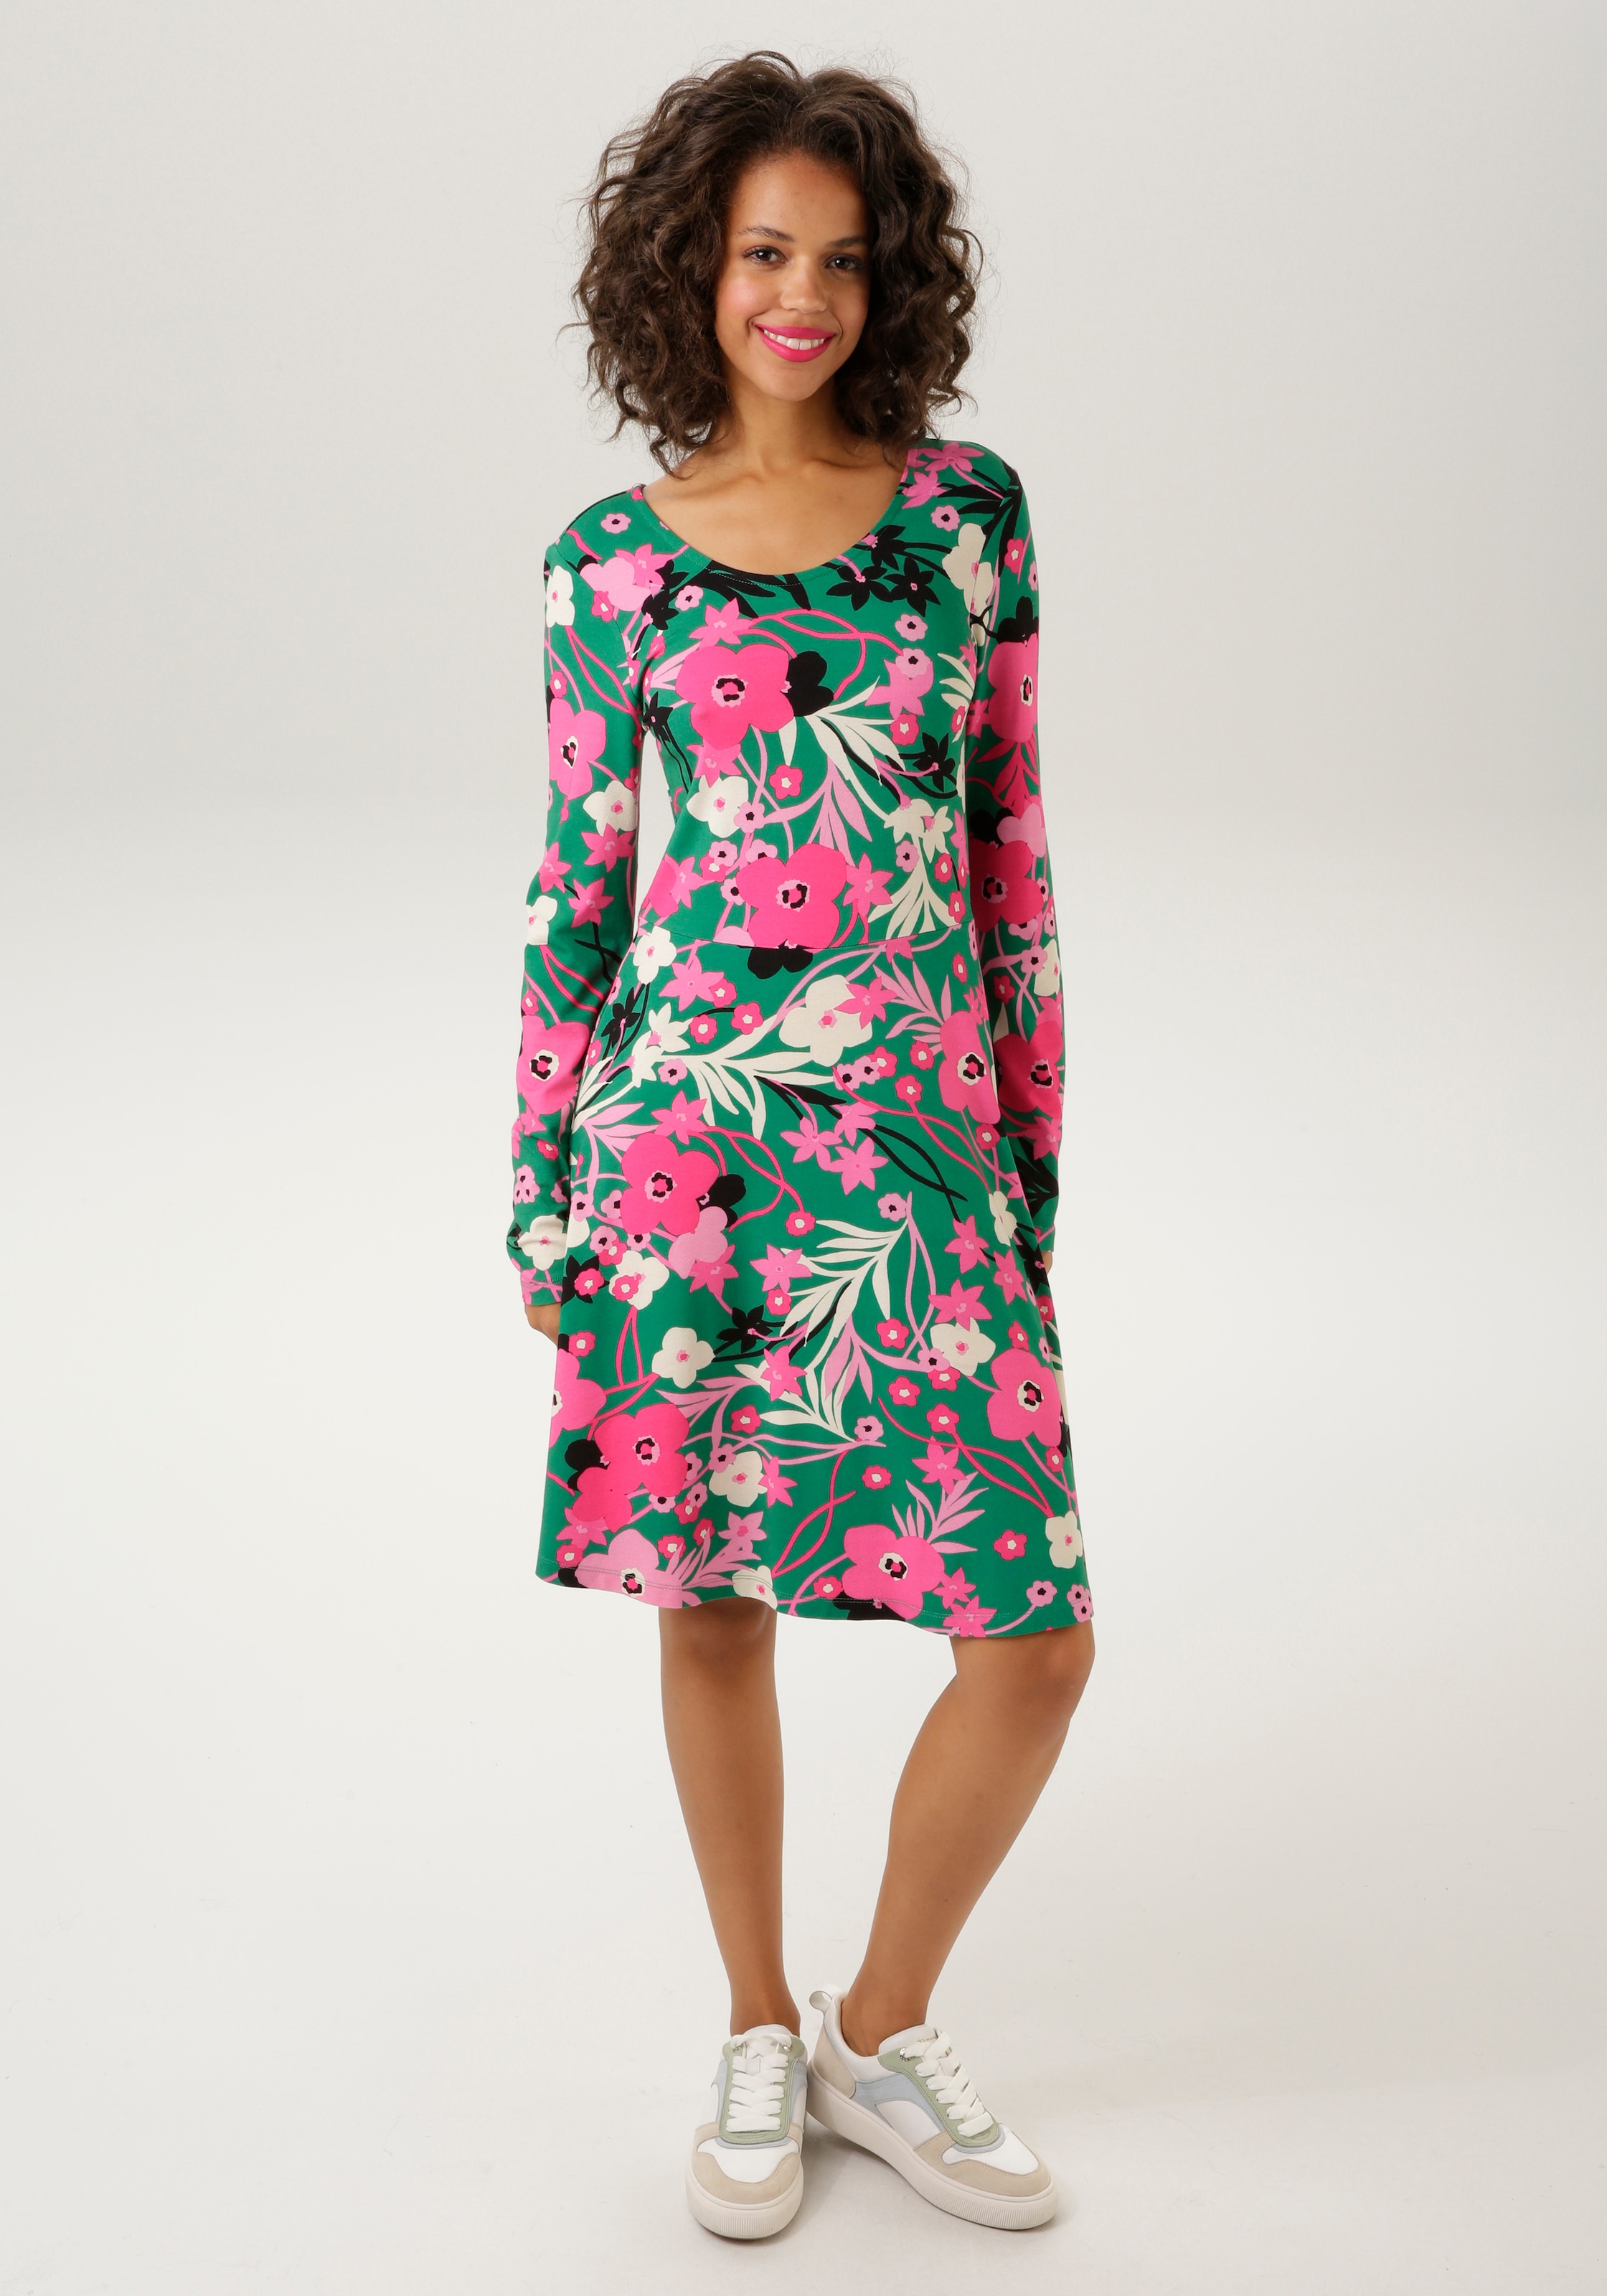 NEUE Teil livraison trendfarbigen Unikat frais Jerseykleid, mit Blumendruck - Aniston KOLLEKTION -jedes sur ein CASUAL de sans